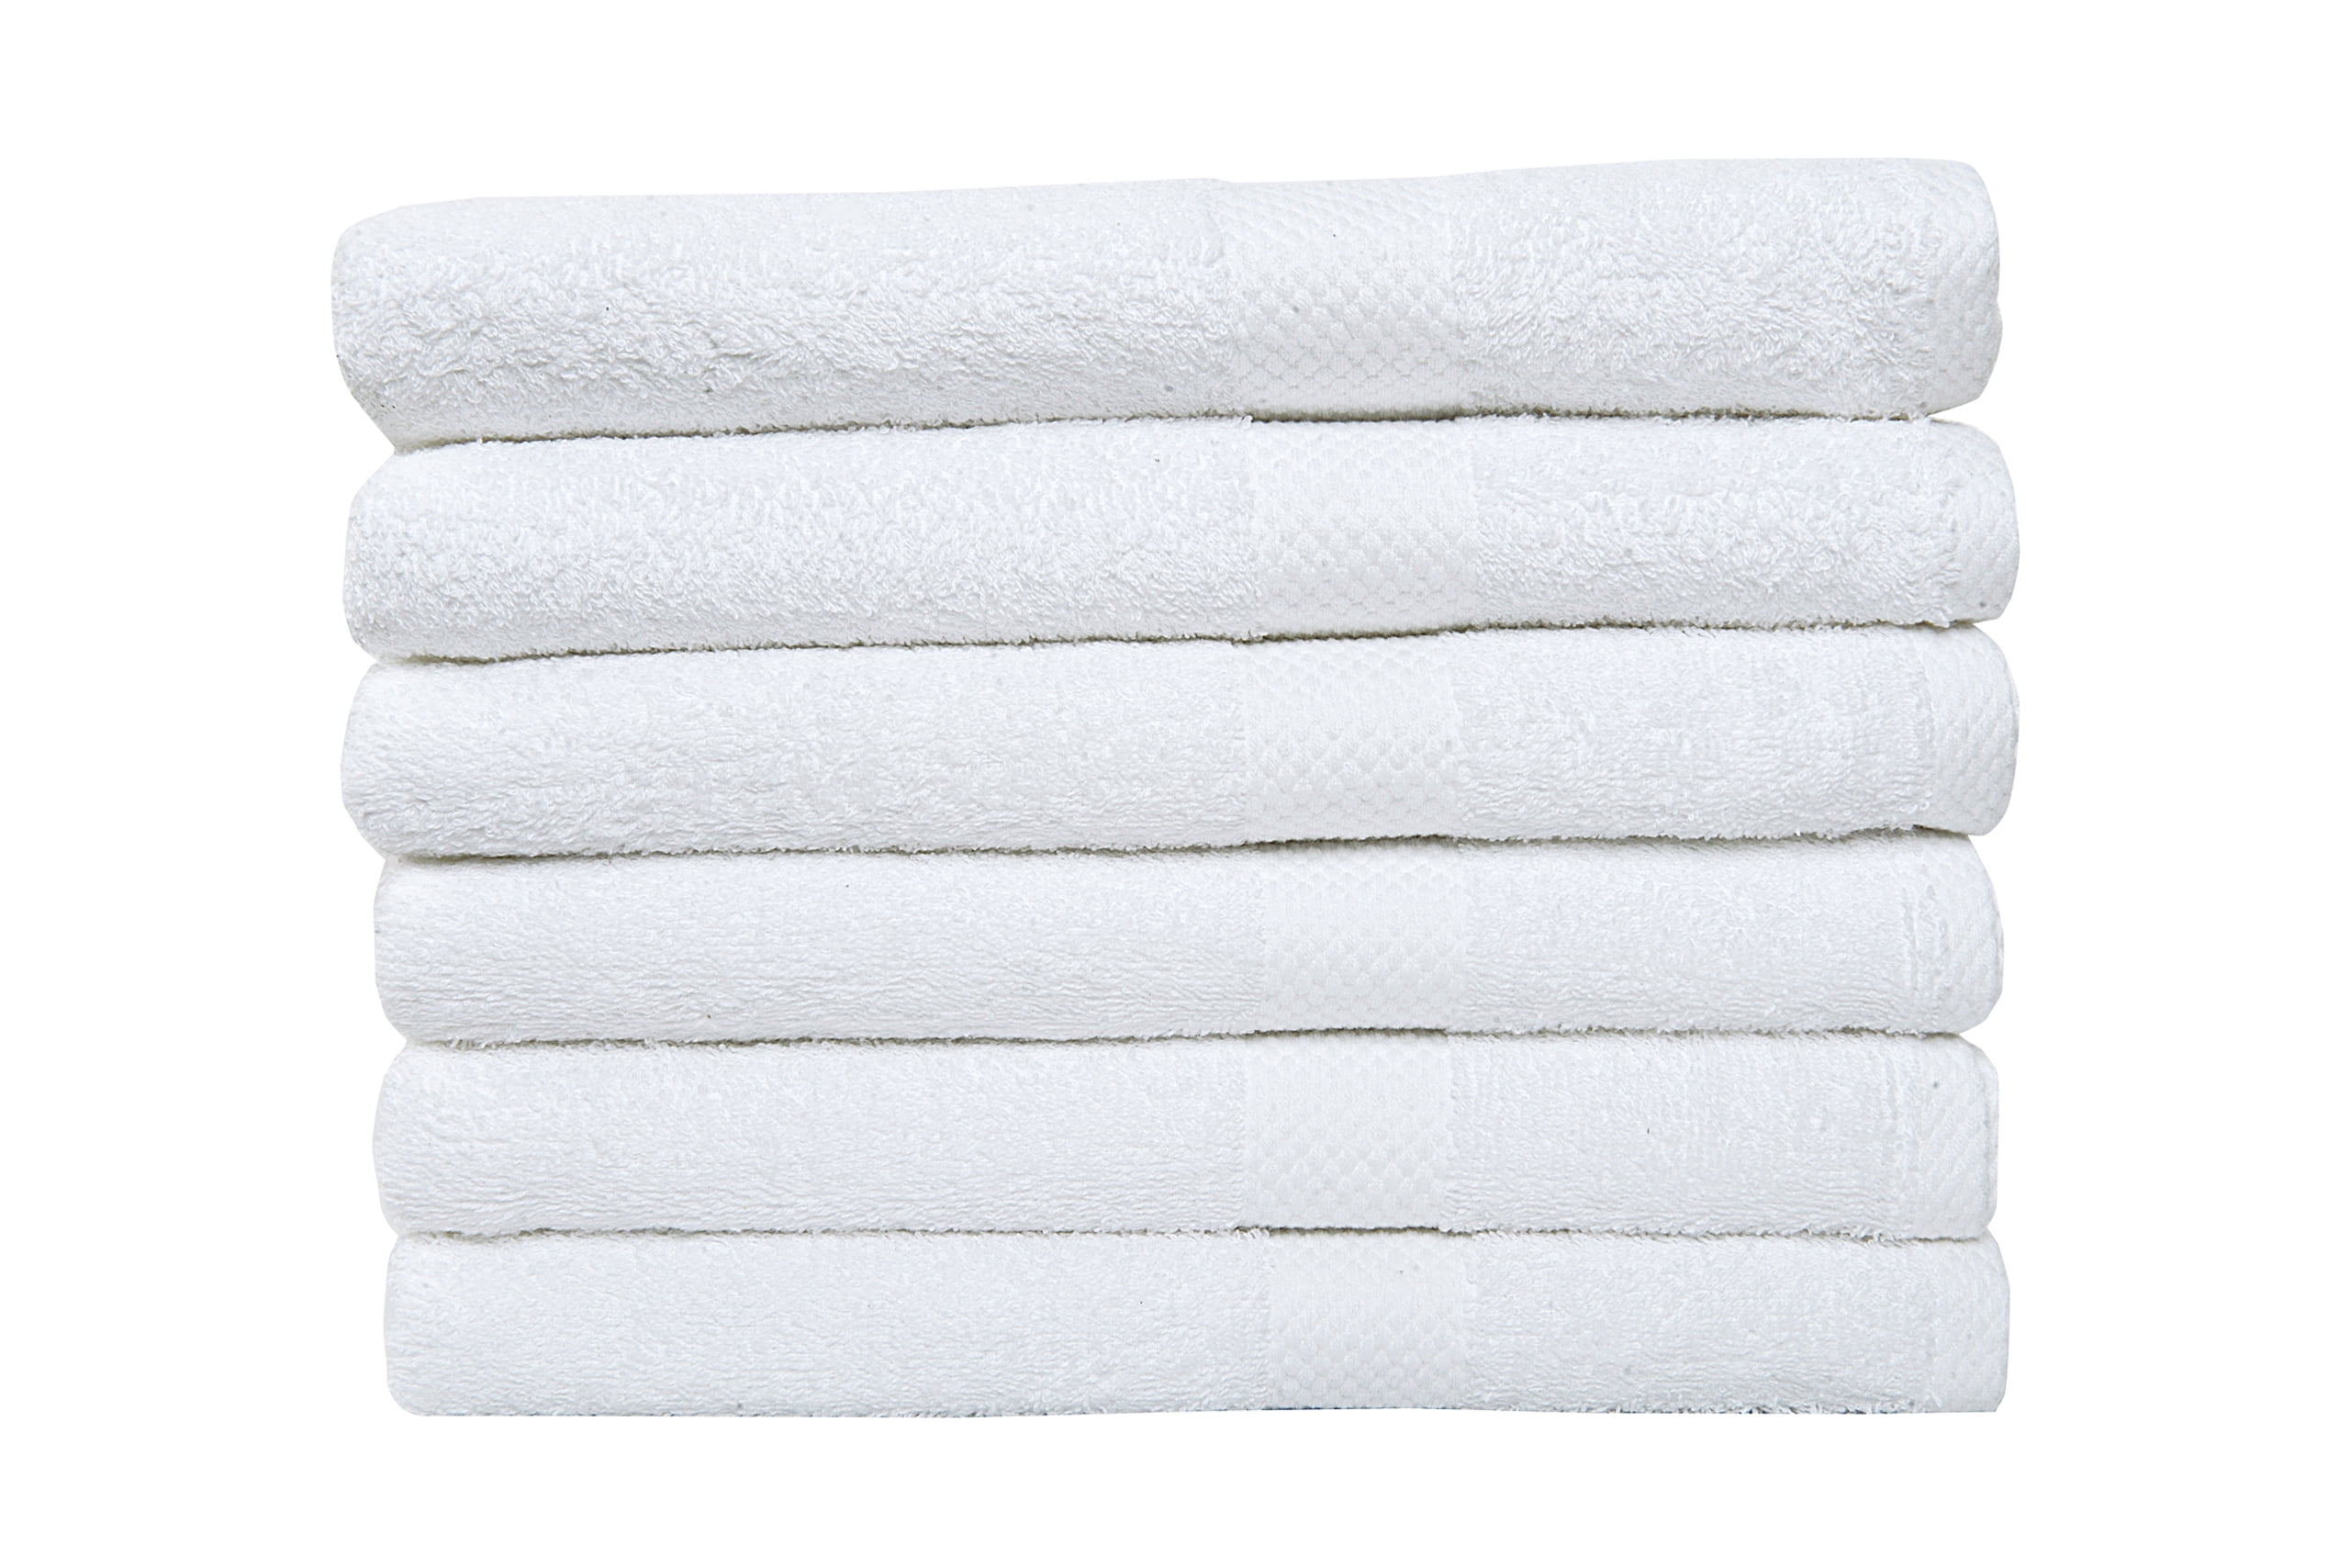 belem Economical 60 White Large Bath Towels Bulk (24x50)- 5 Dozen Wholesale  Cheap Bath Towel Set- Save $149 in Bulk Bath Towels – Light Weight, Quick